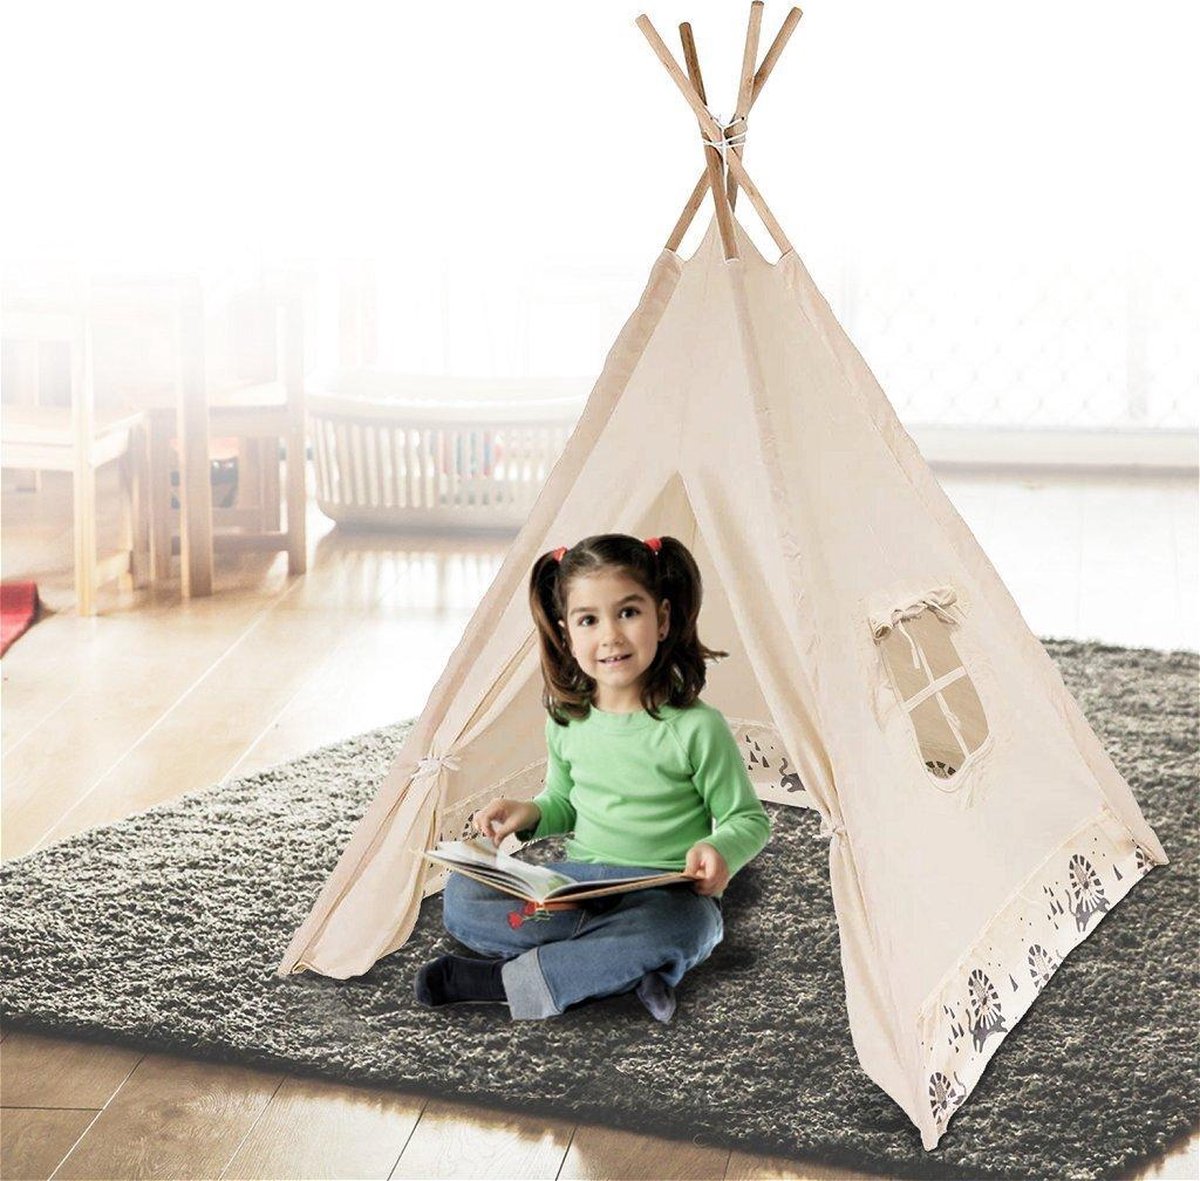 De waarheid vertellen Aanleg Rafflesia Arnoldi Tipi tent: Vind hier de leukste Tipi tenten in 2023 voor kinderen